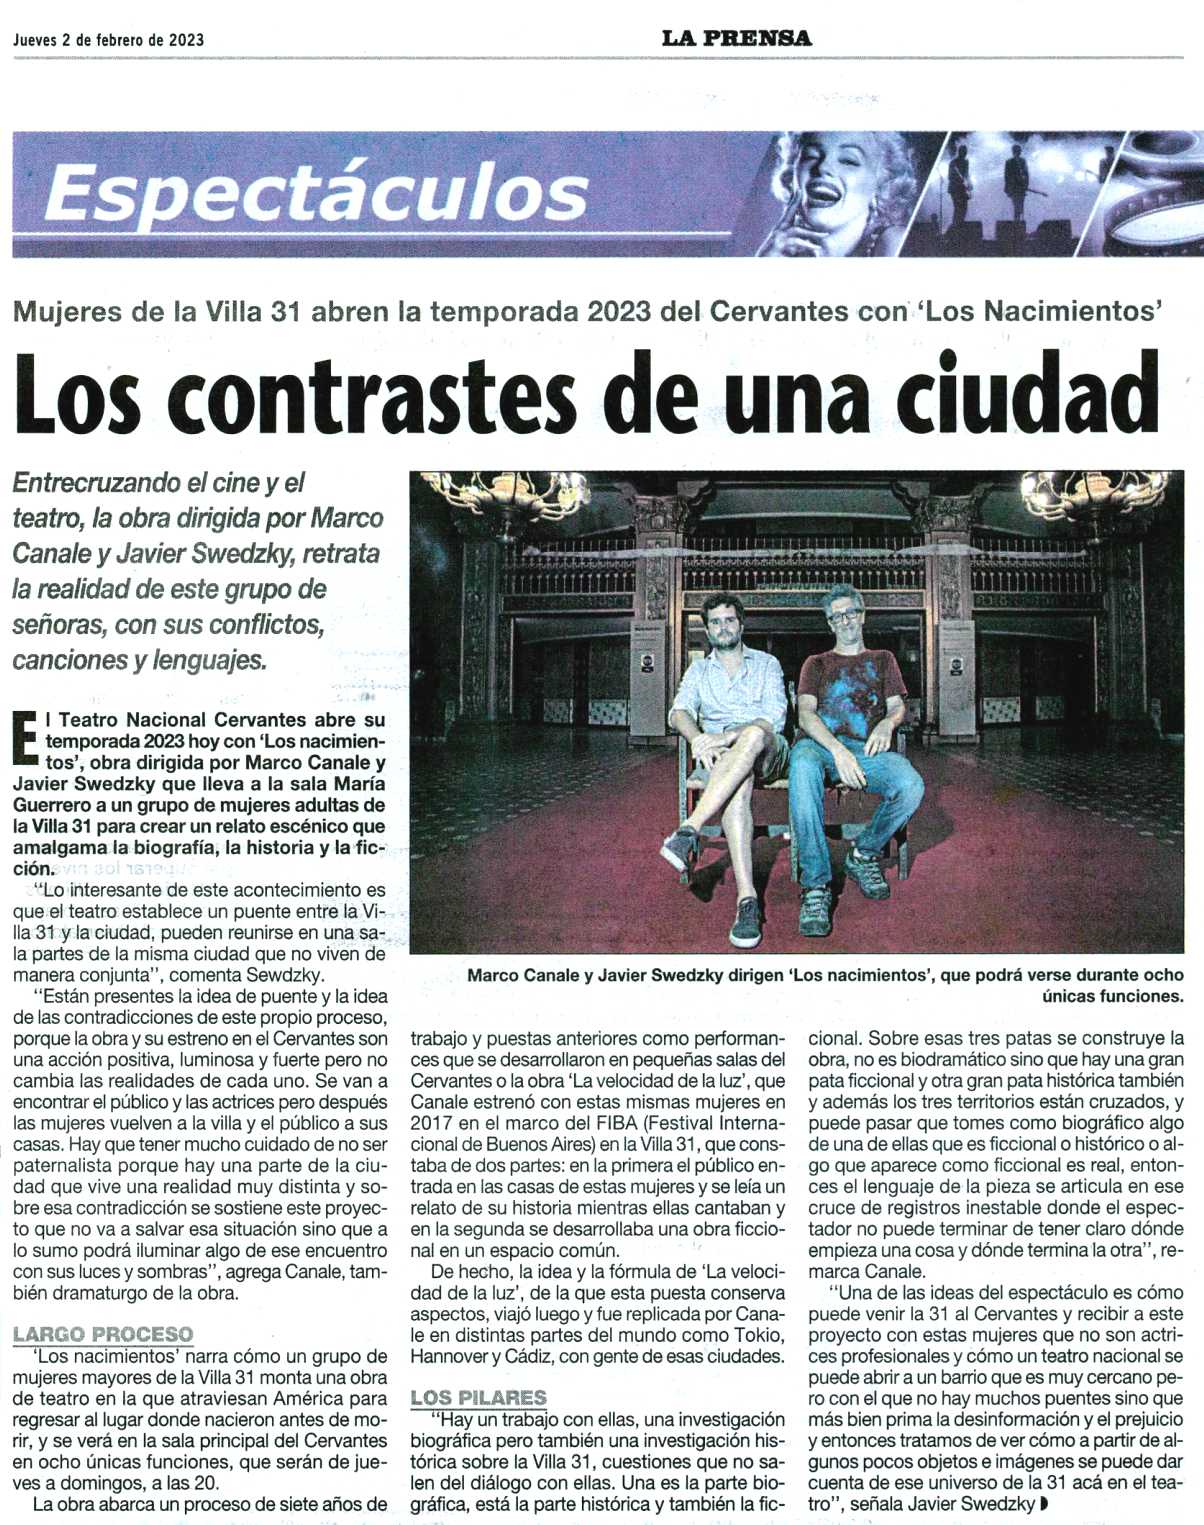 Diario LA PRENSA - 2/02/2023